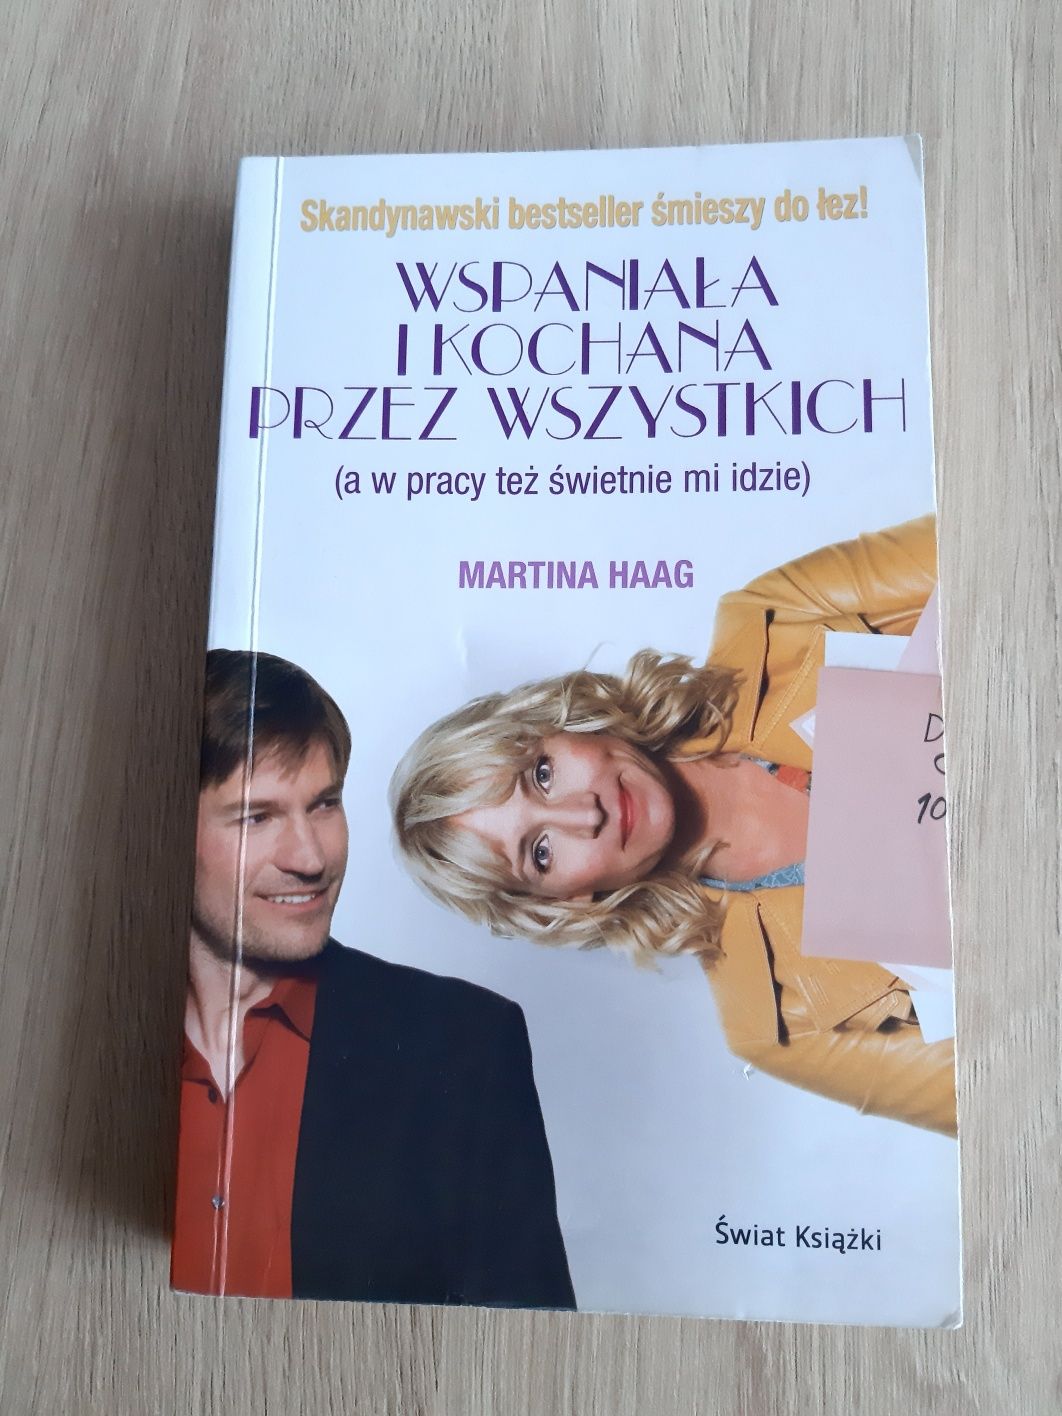 Książka "Wspaniała i kochana przez wszystkich" Martina Haag